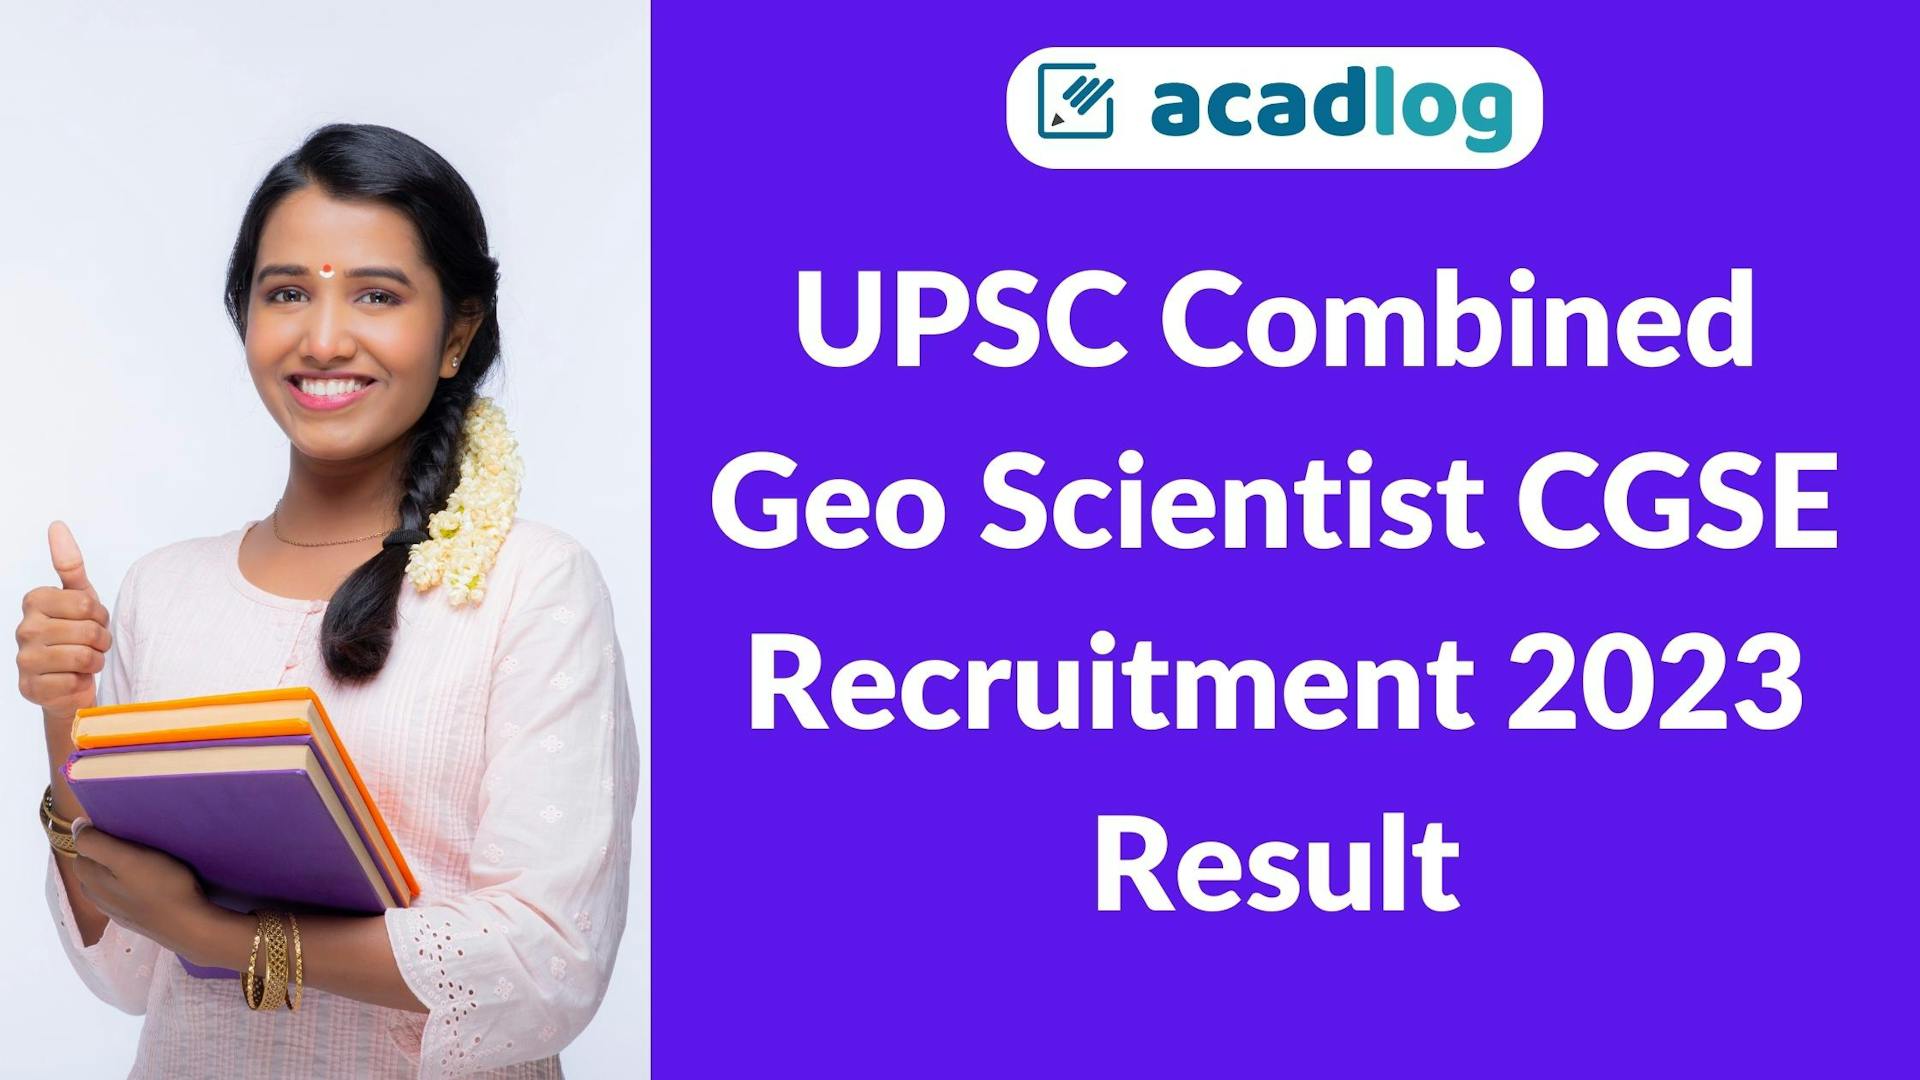 Acadlog: UPSC Geologist / Geo Scientist CGSE Pre Result 2023